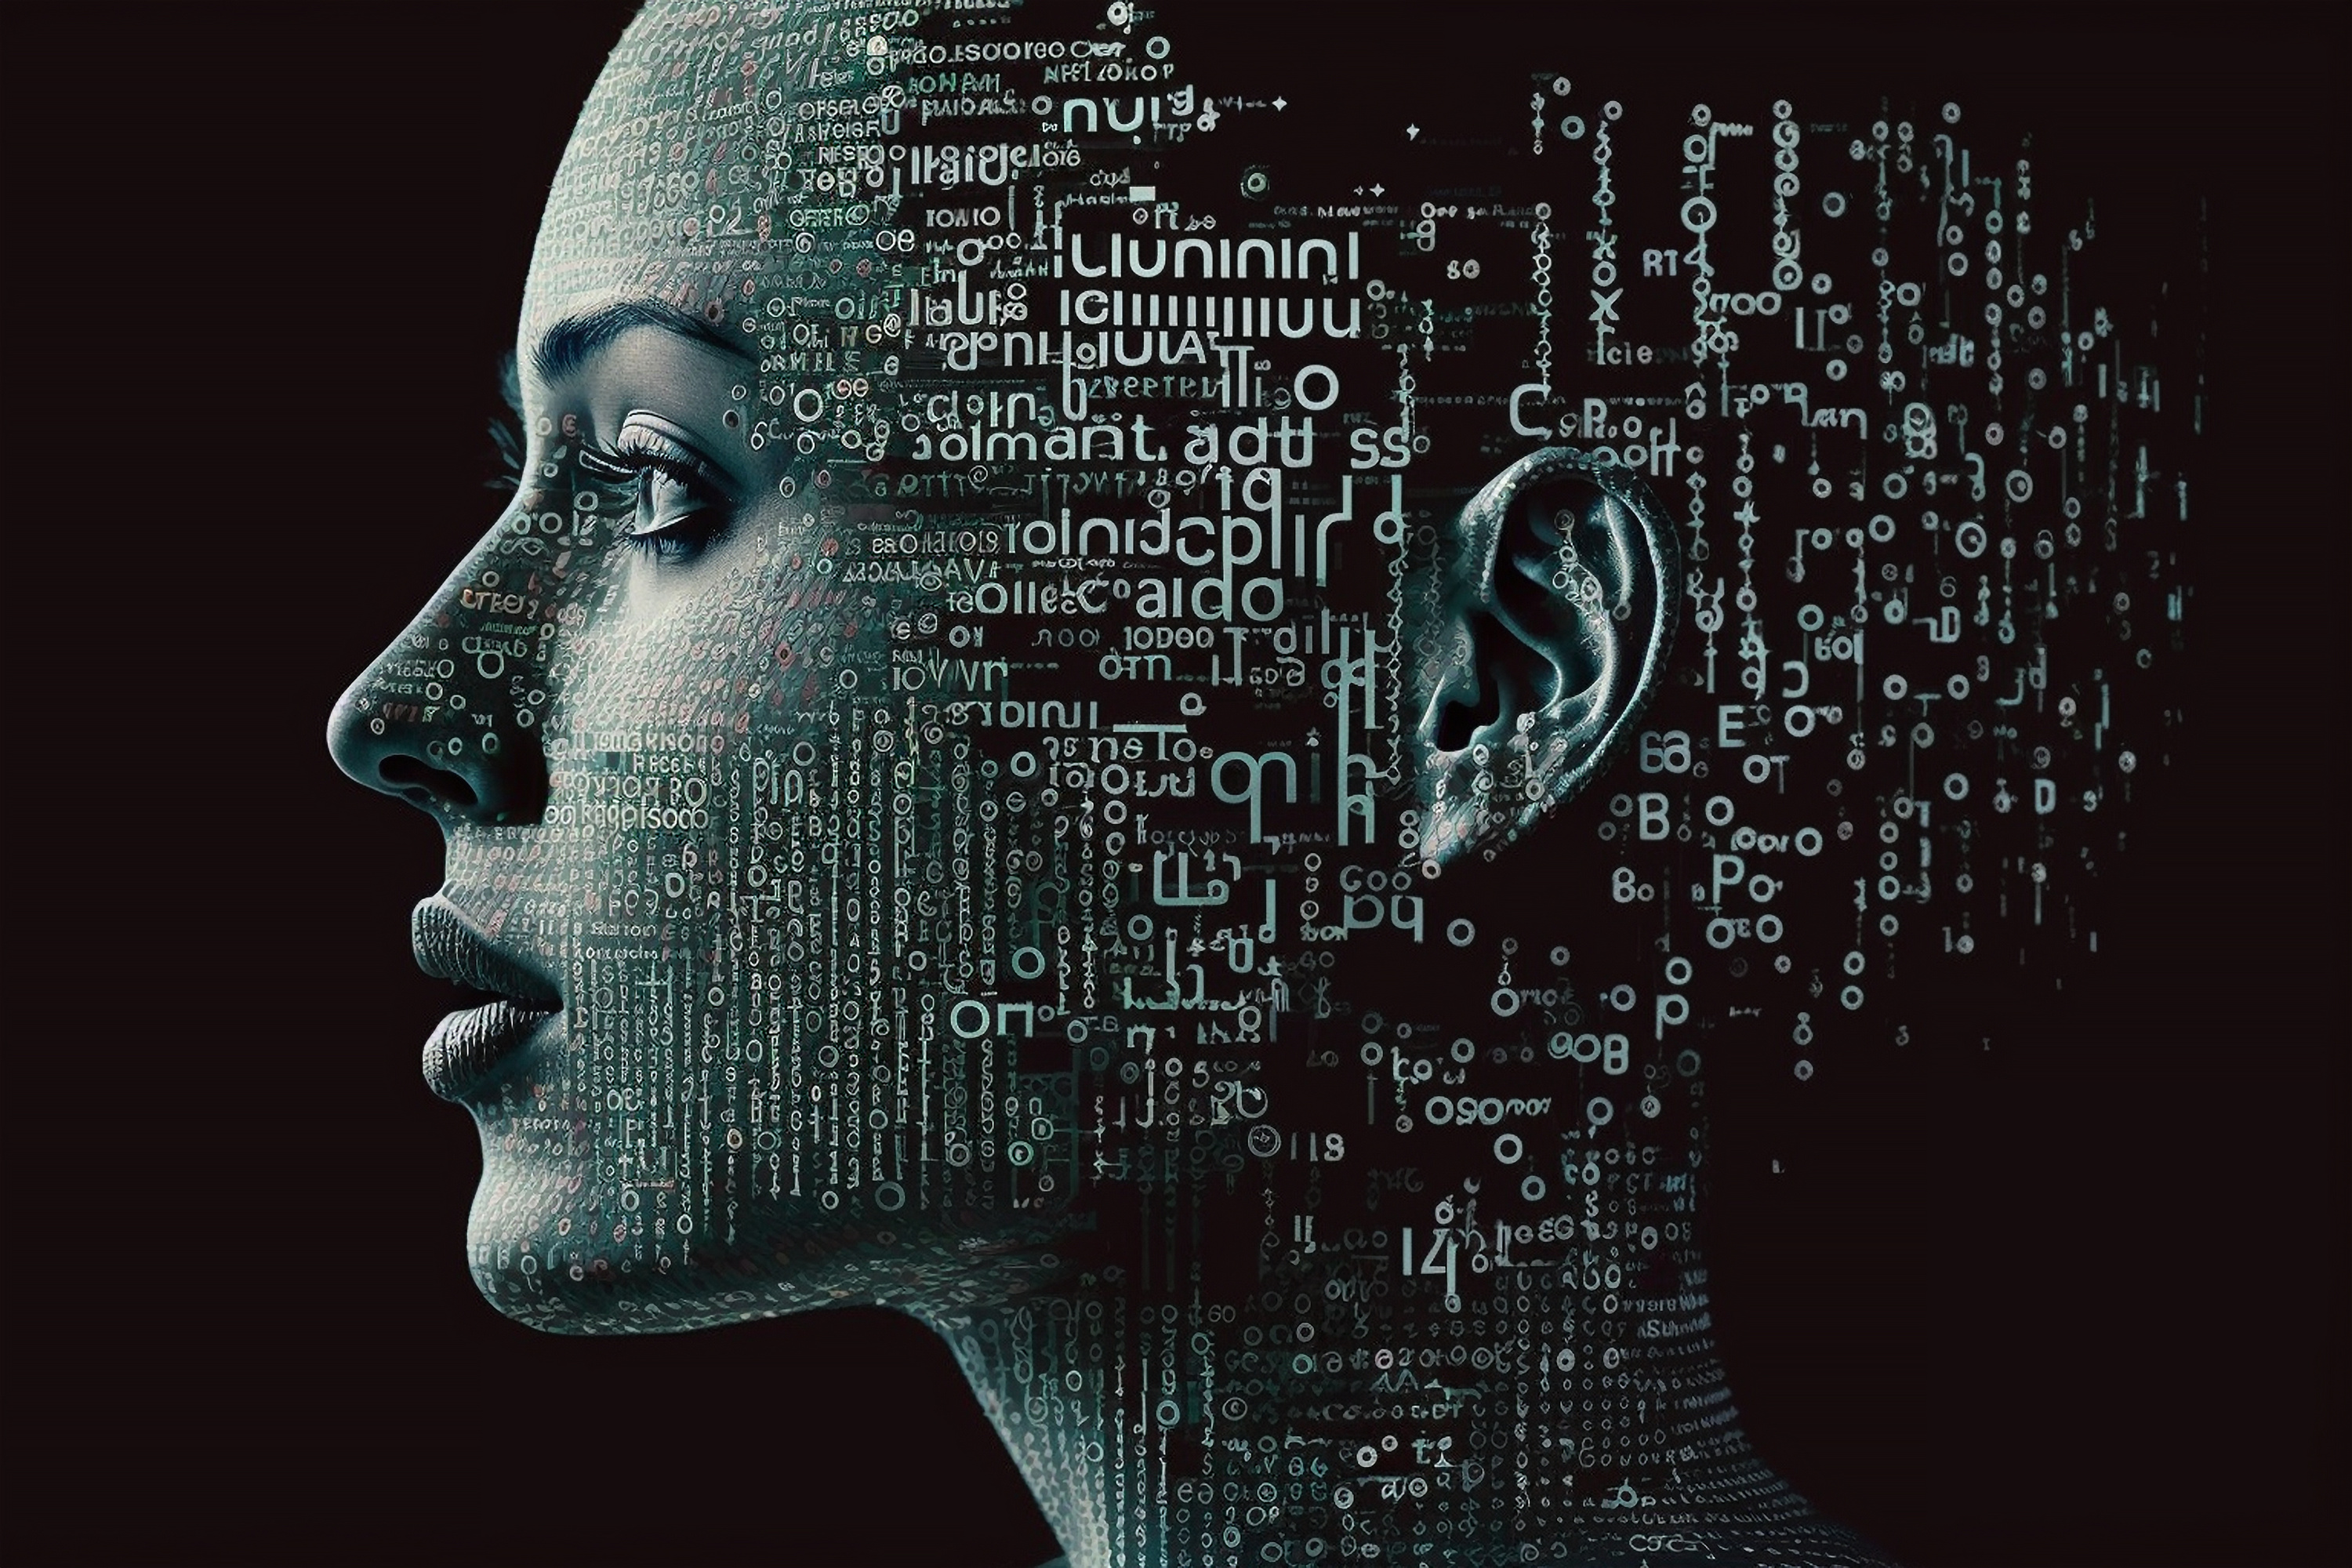 L'IA basée sur le langage pourrait permettre un diagnostic plus précis de pathologies avec trouble de la parole comme dans la schizophrénie. © Petevisual, Adobe Stock